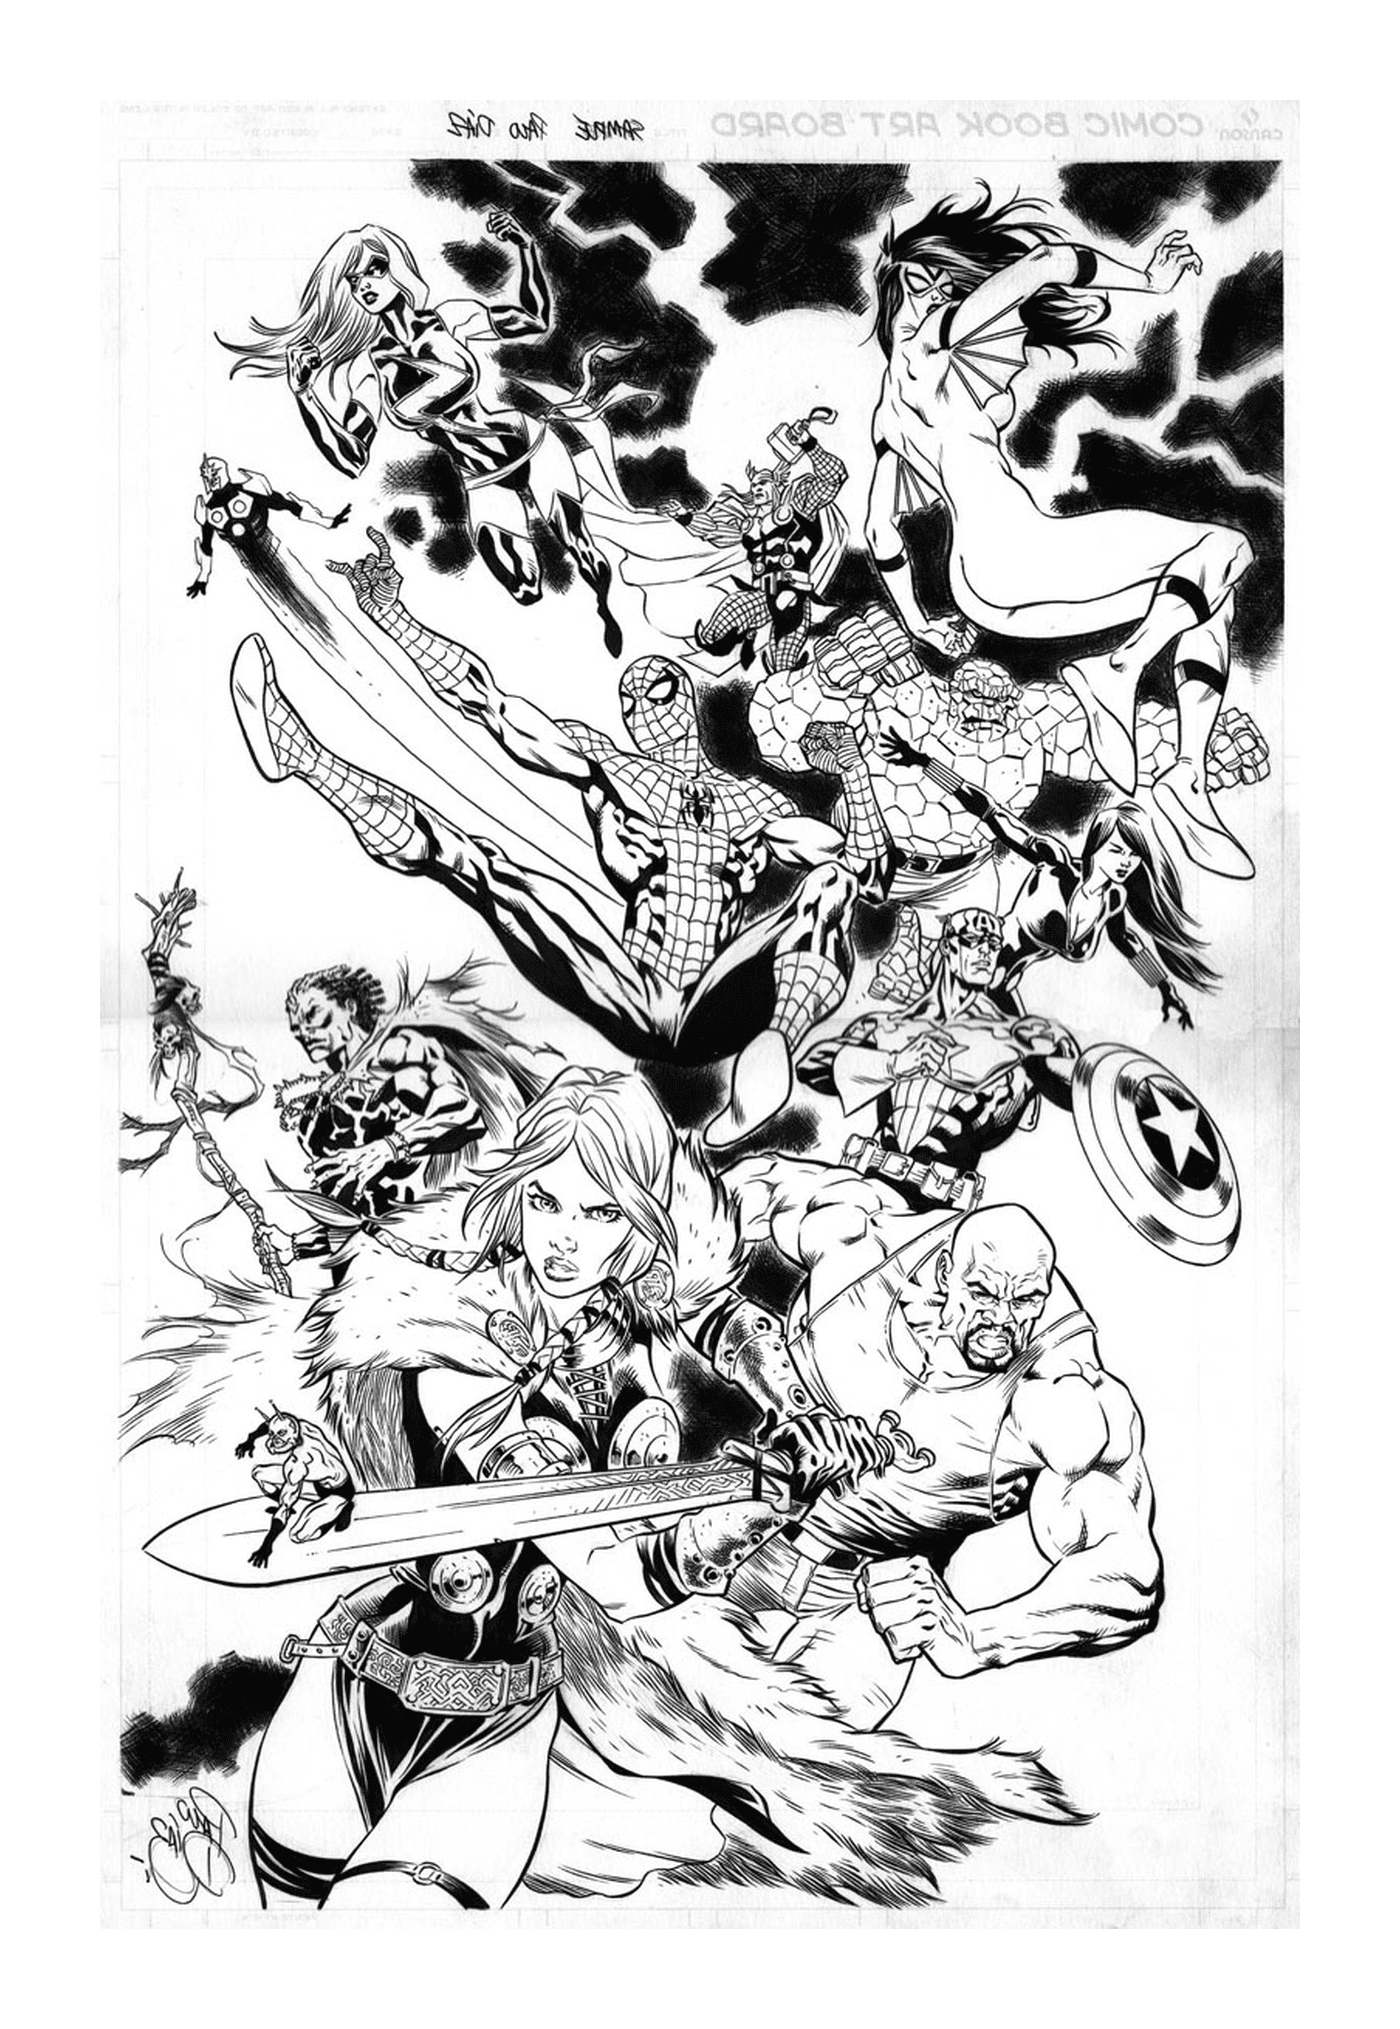  Eine Gruppe von Superhelden in Schwarz und Weiß 